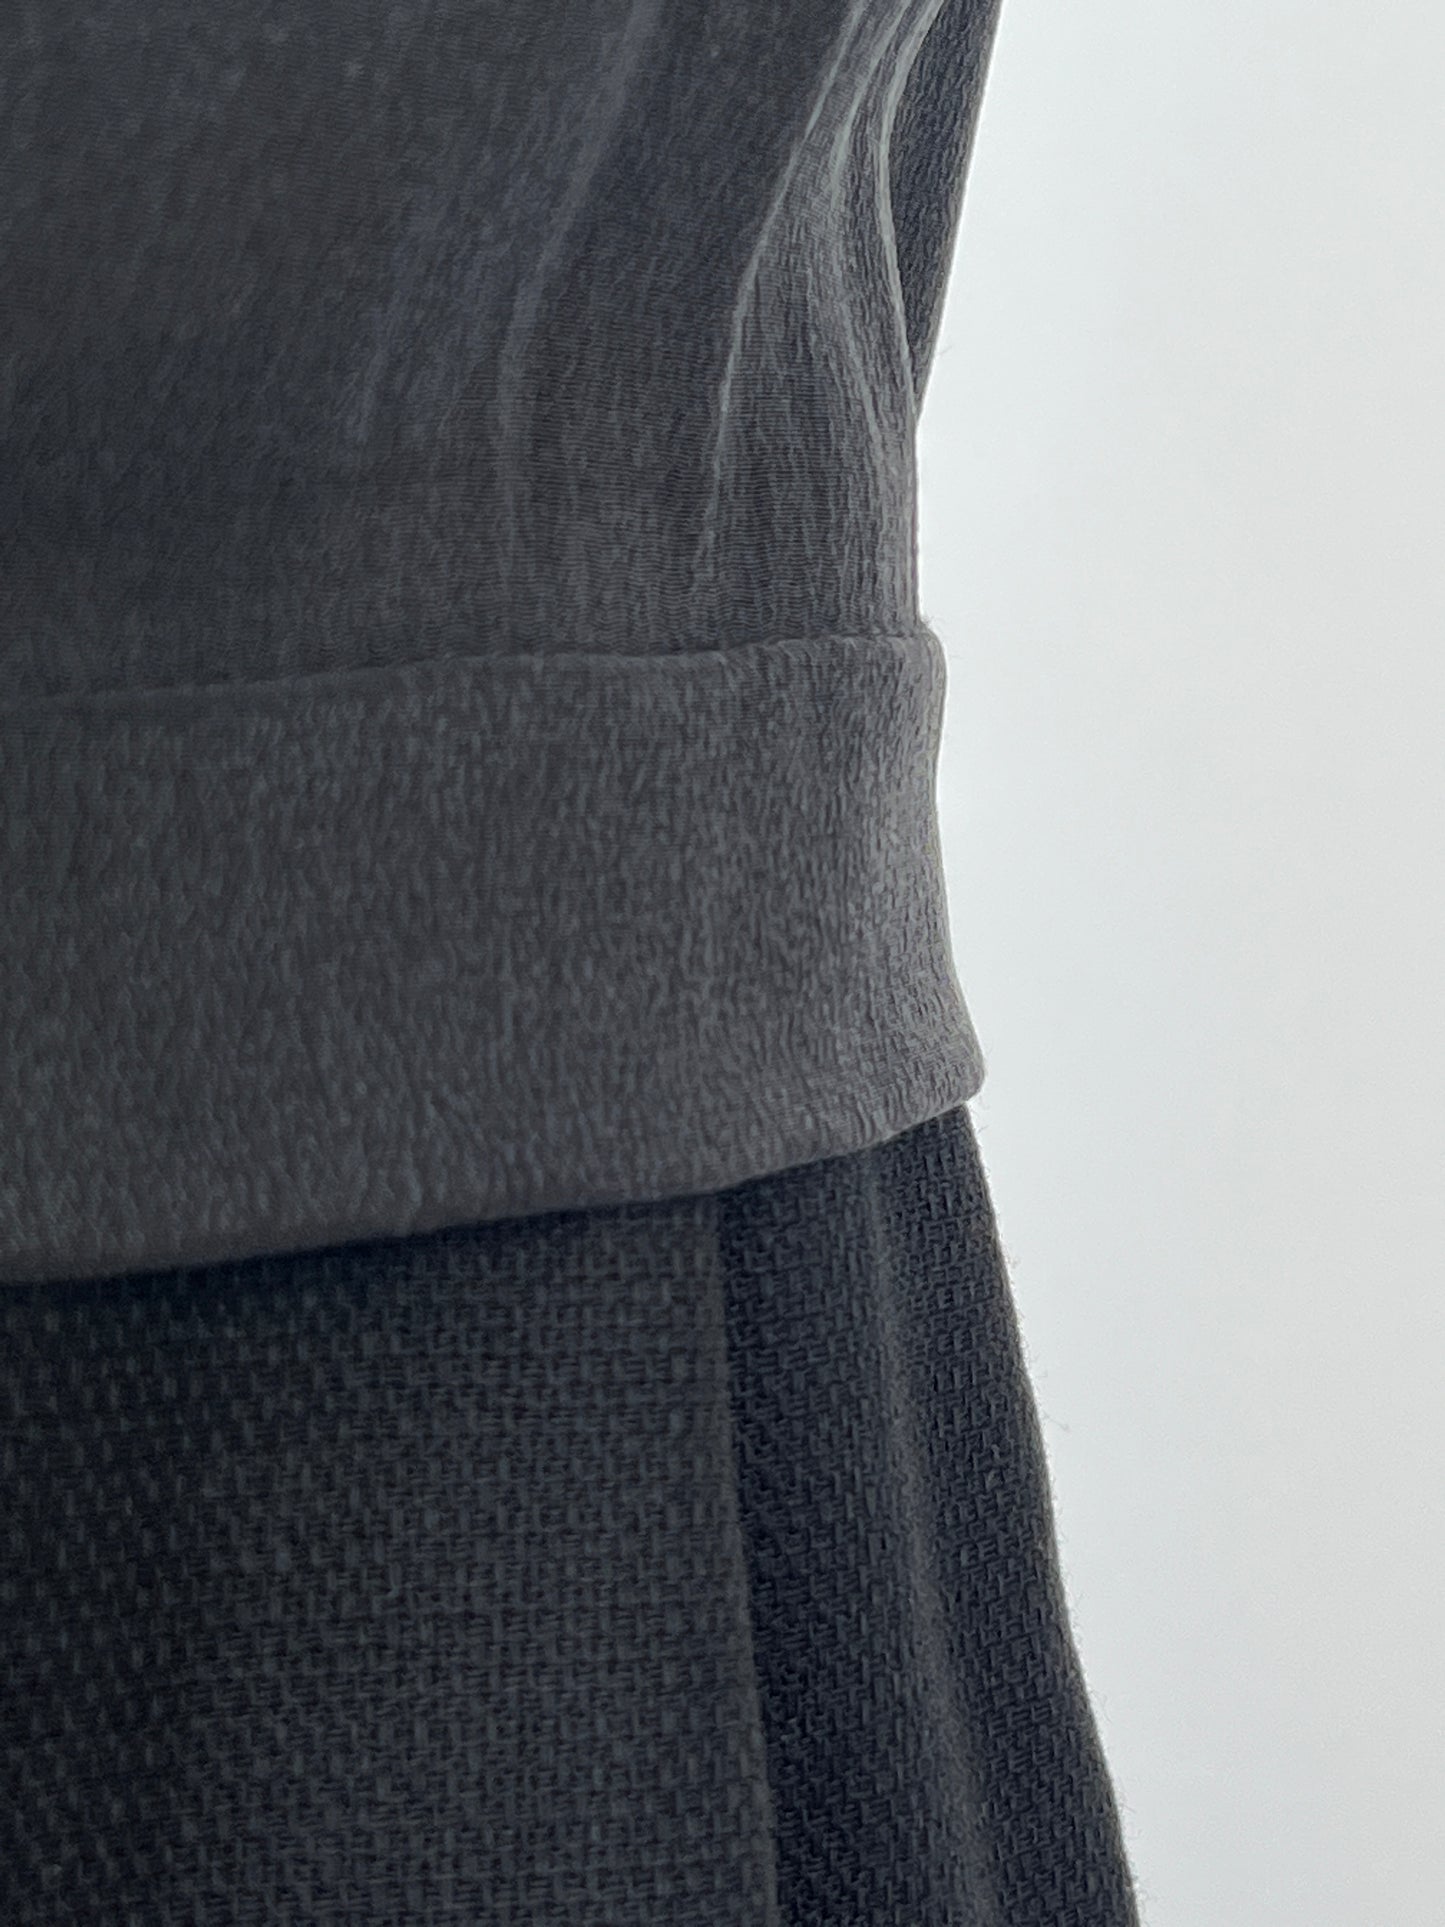 Robe noire bi matière en pure soie et pur coton (XS)